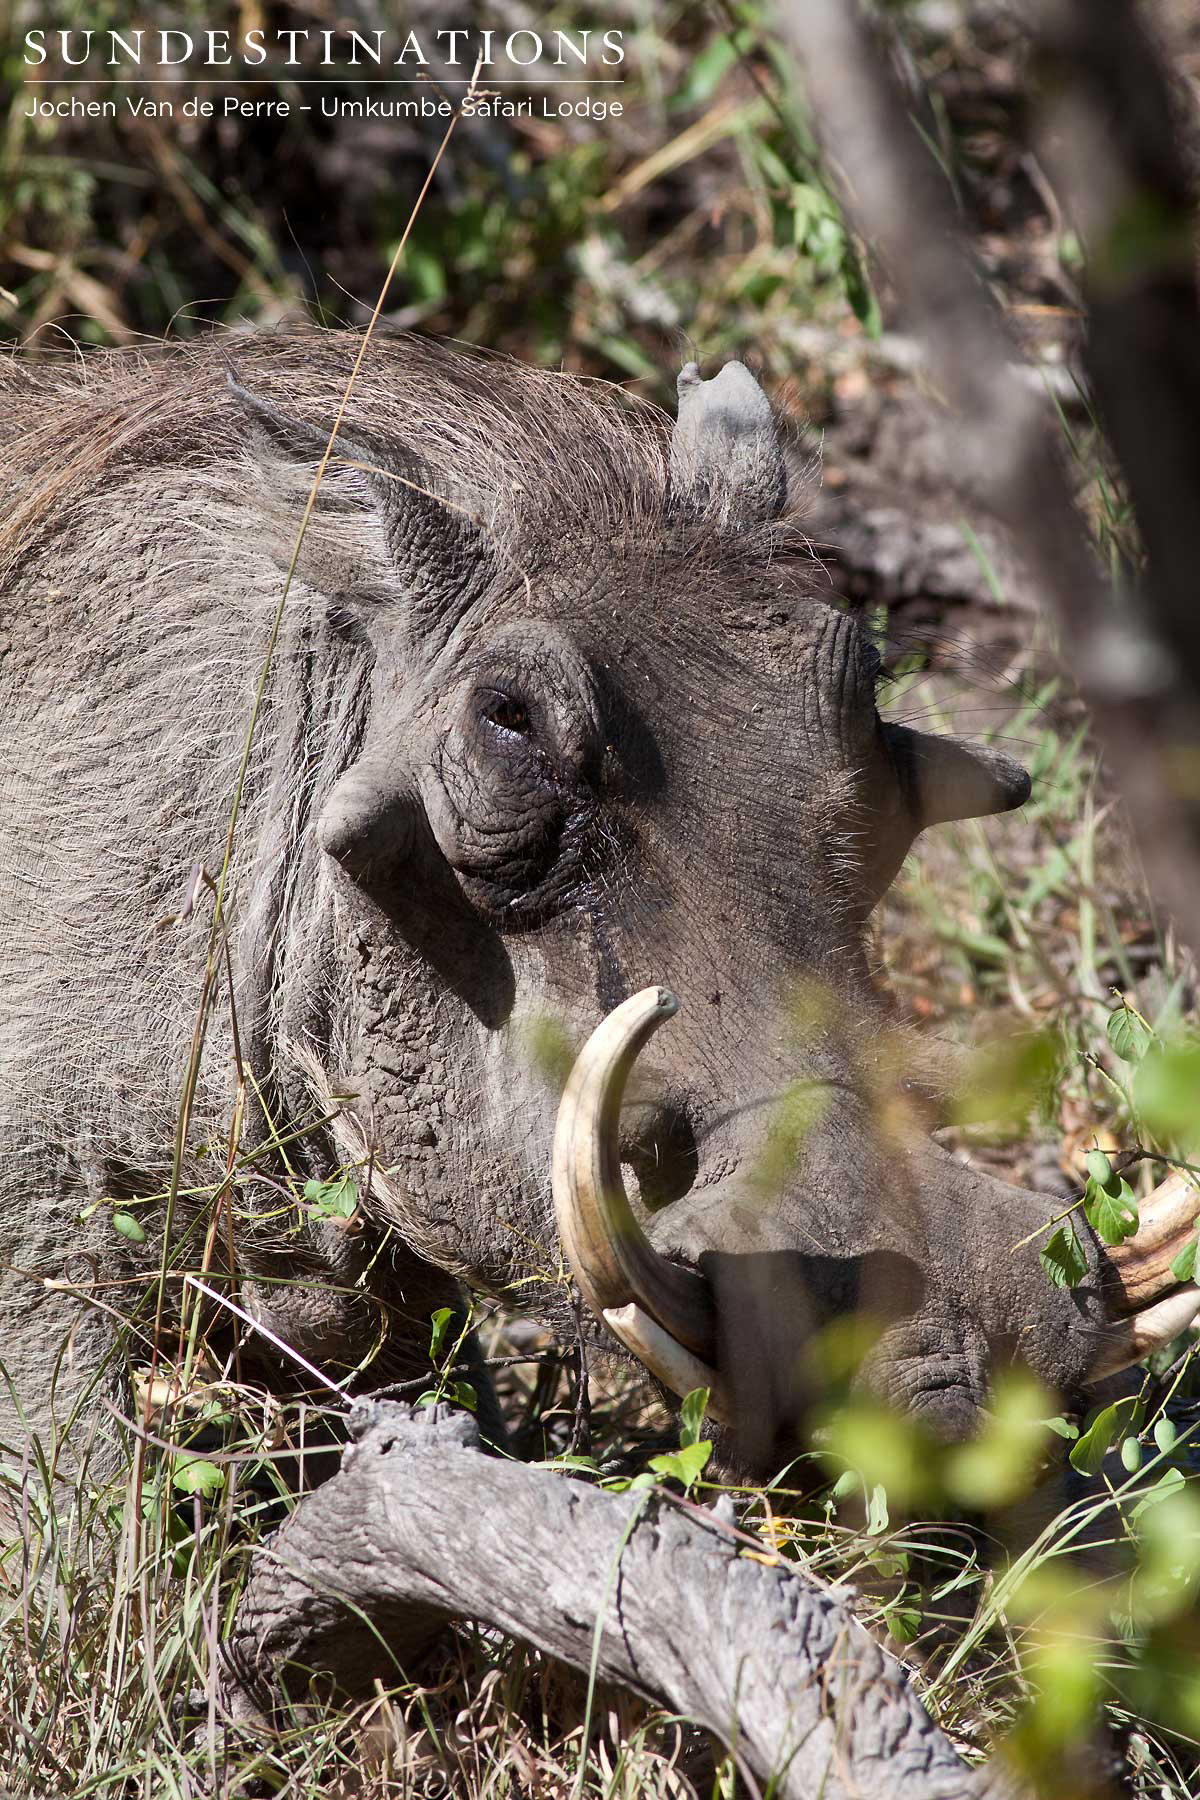 Warthog are in abundance in the Sabi Wildtuin